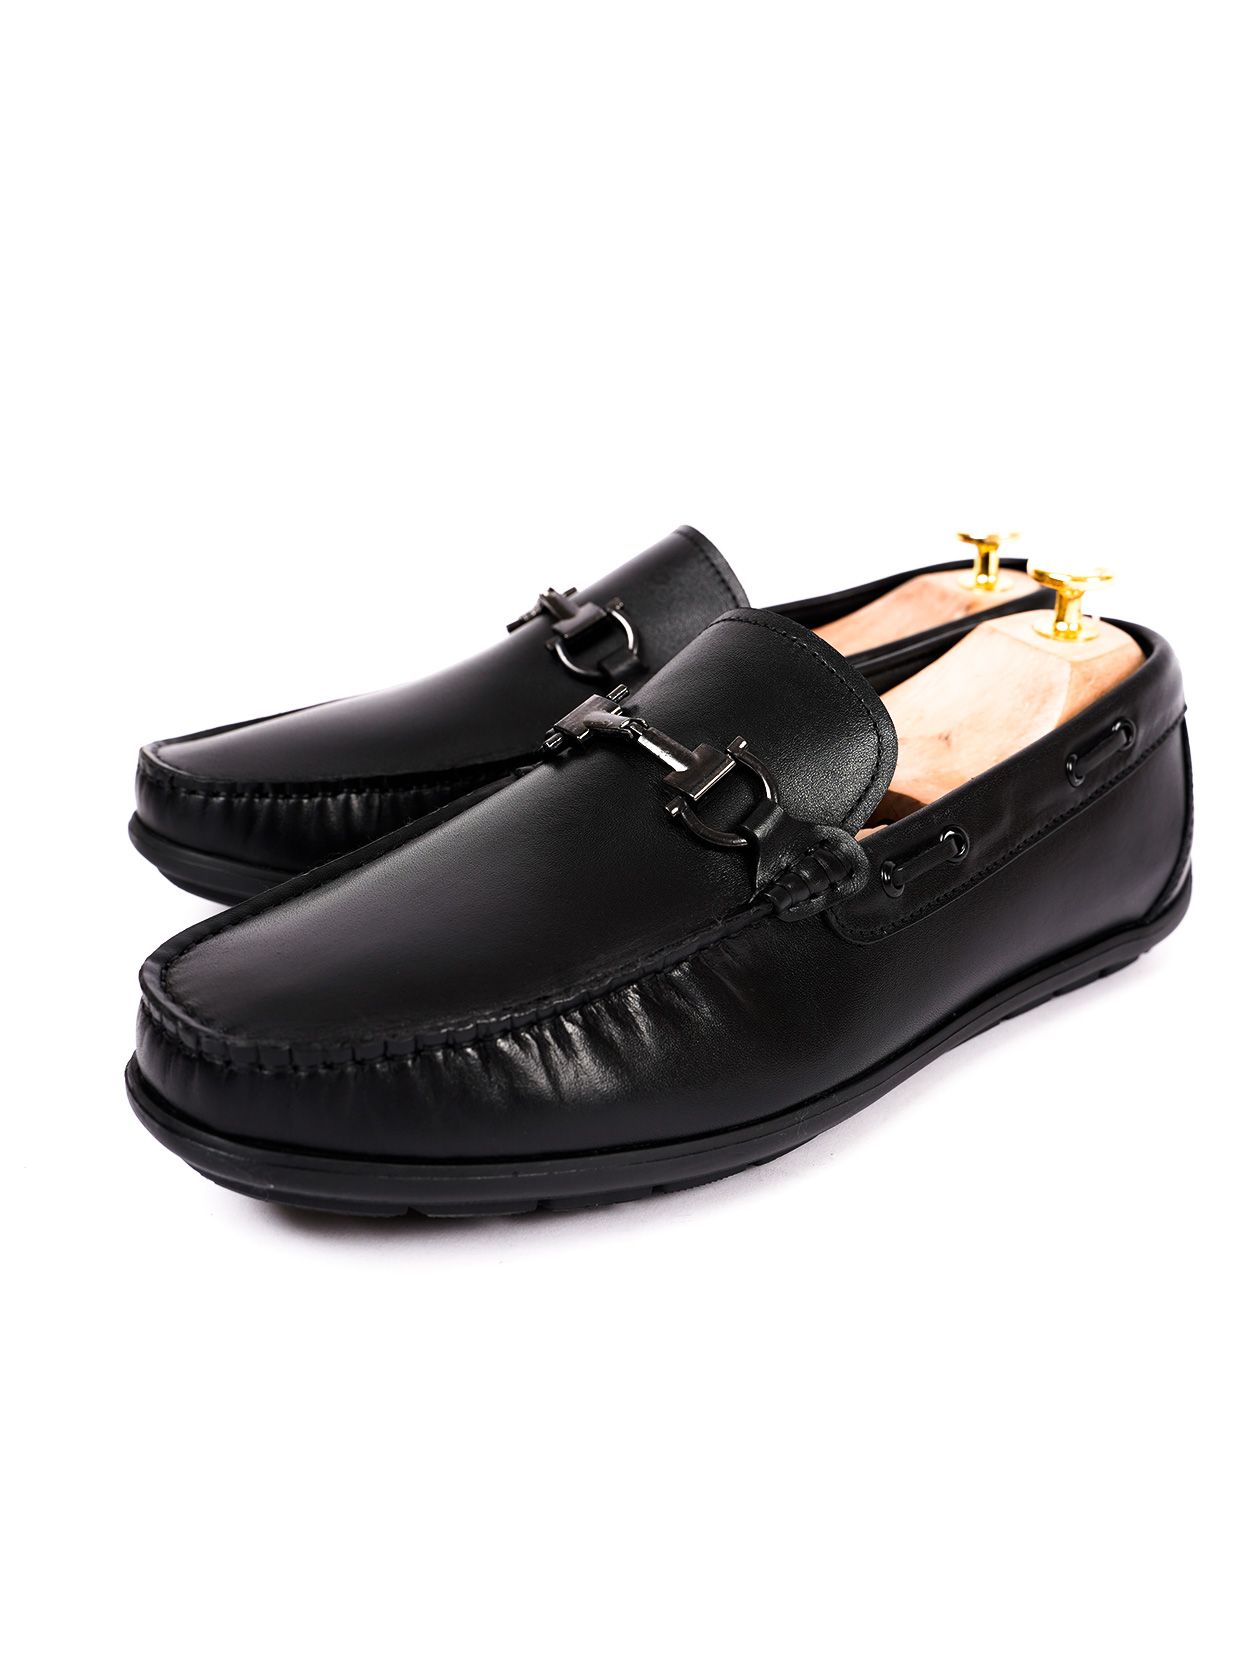 Giày lười da trơn thiết kế móc, đen - 2106GDAT15DEN